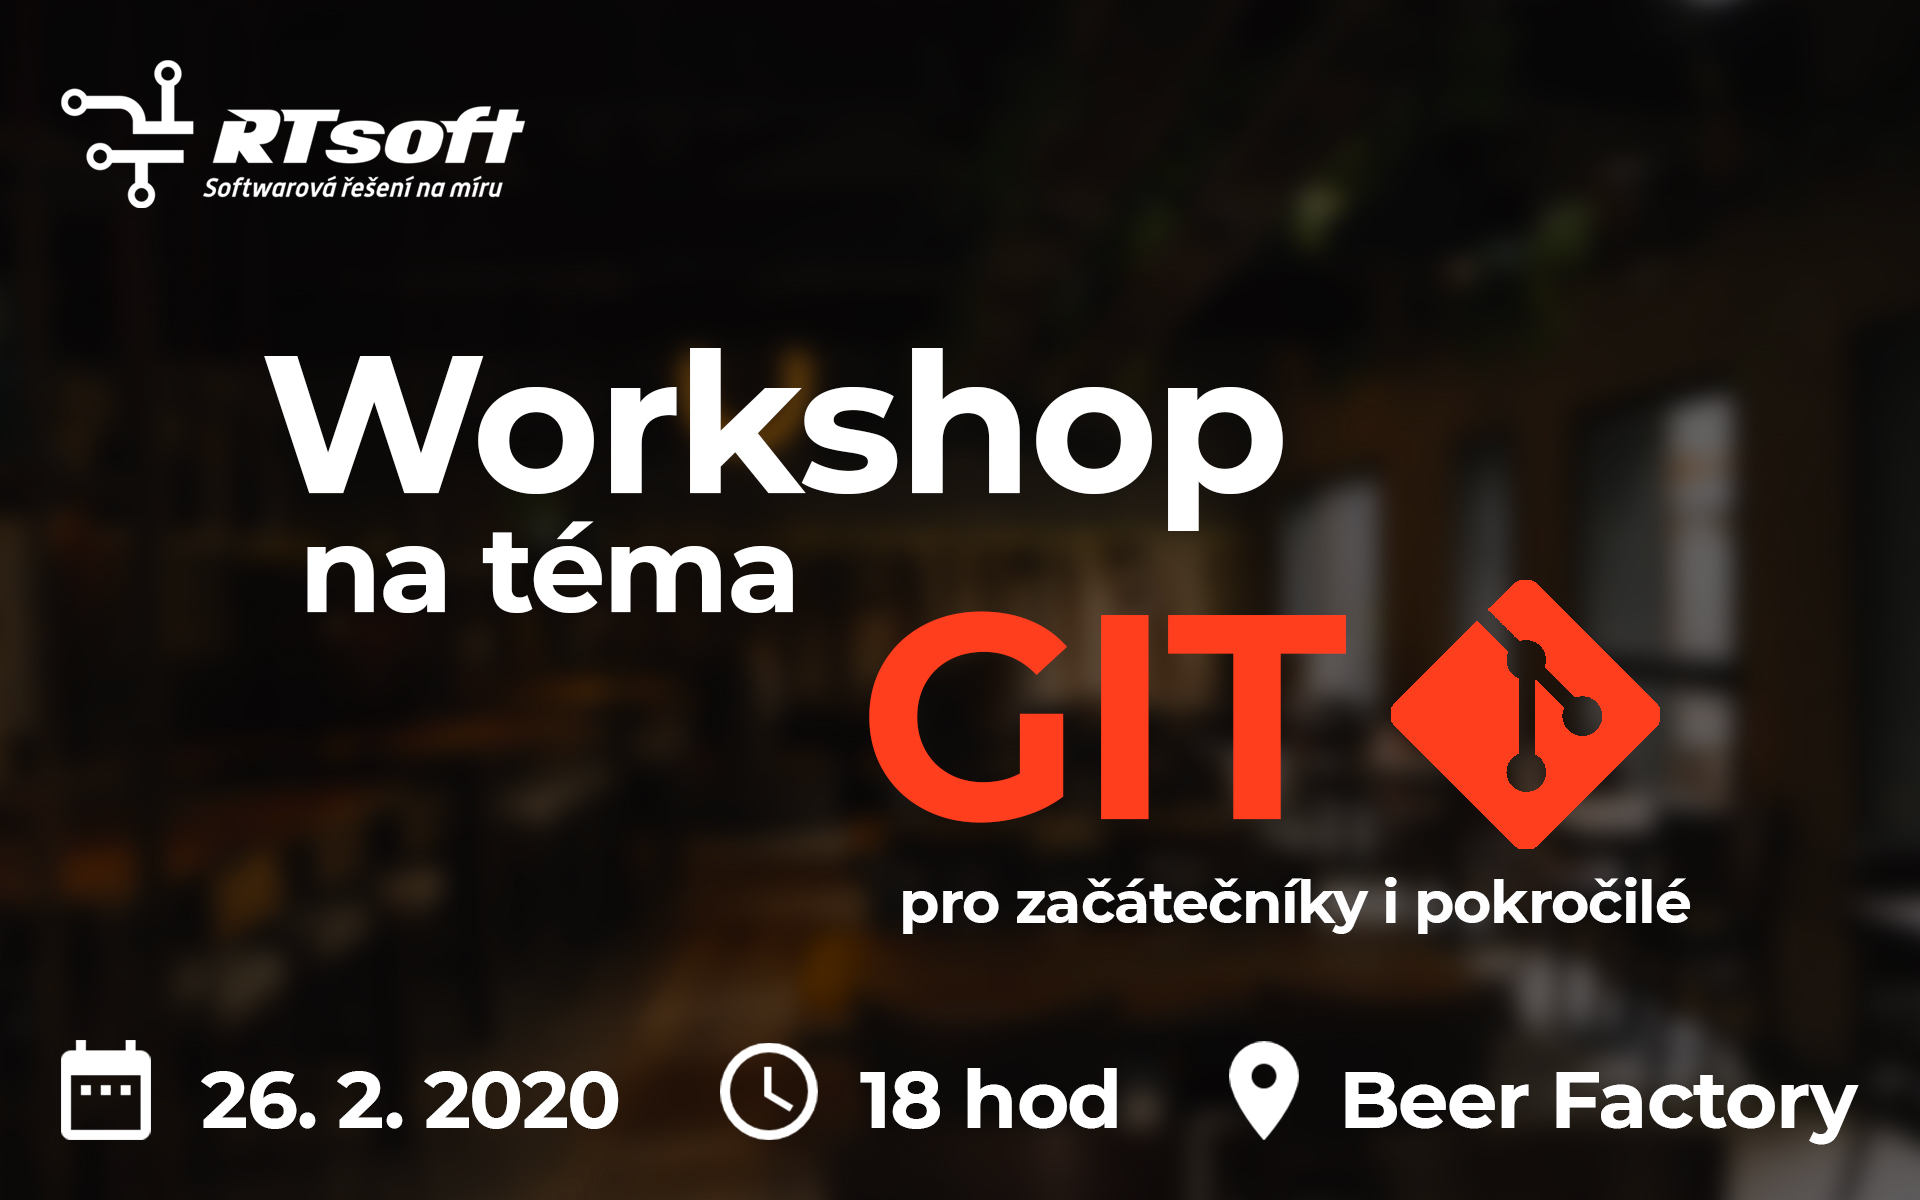 Workshop Git